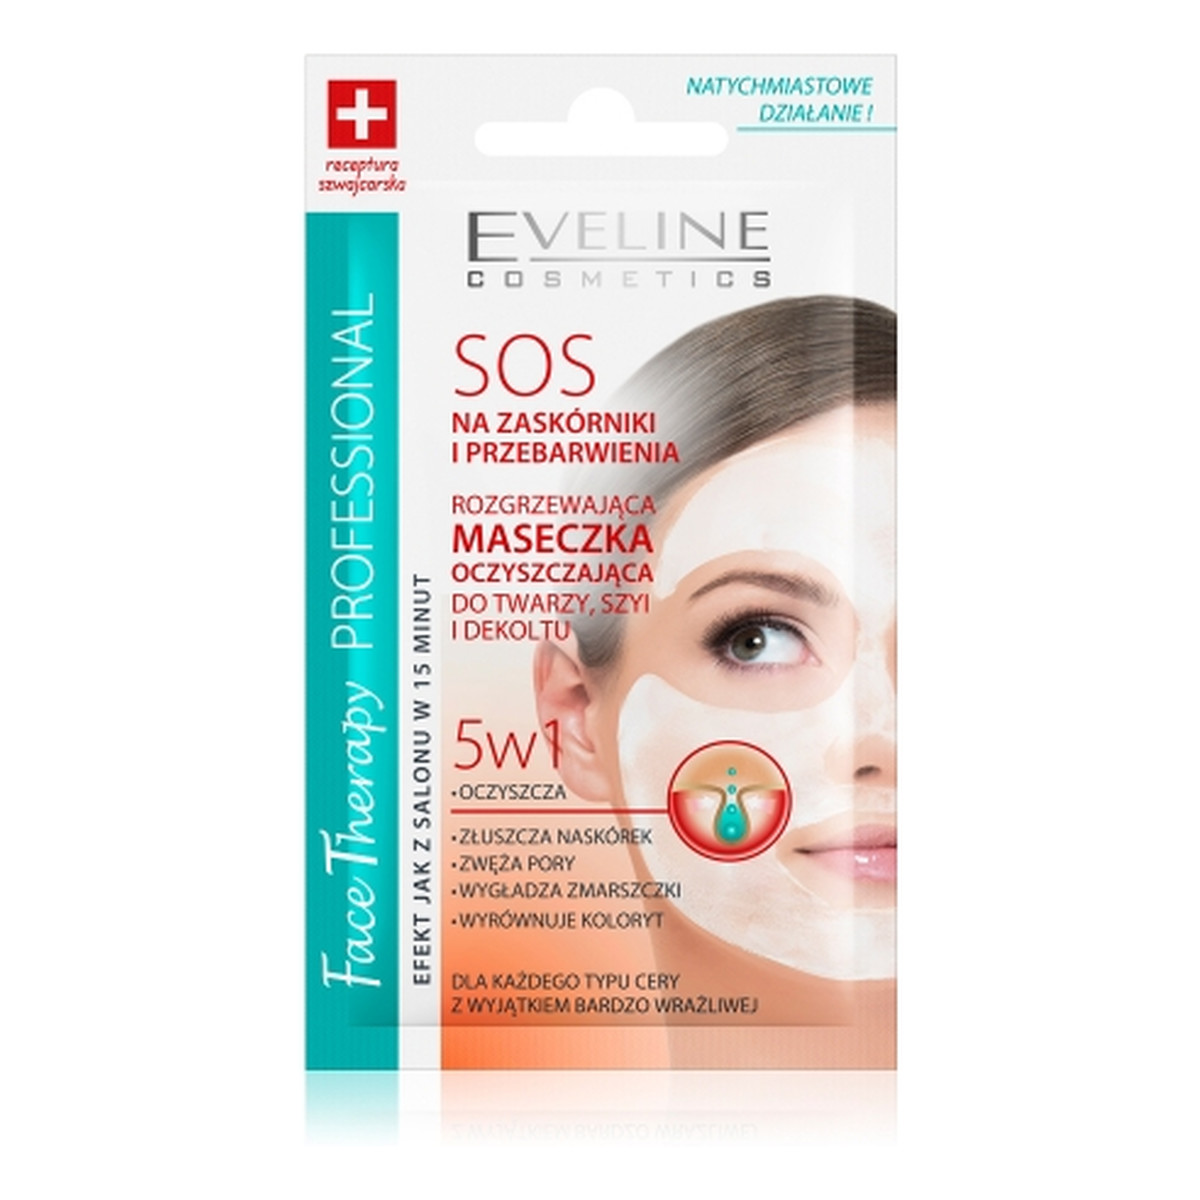 Eveline Face Therapy SOS Rozgrzewająca Maseczka Oczyszczająca 5w1 7ml